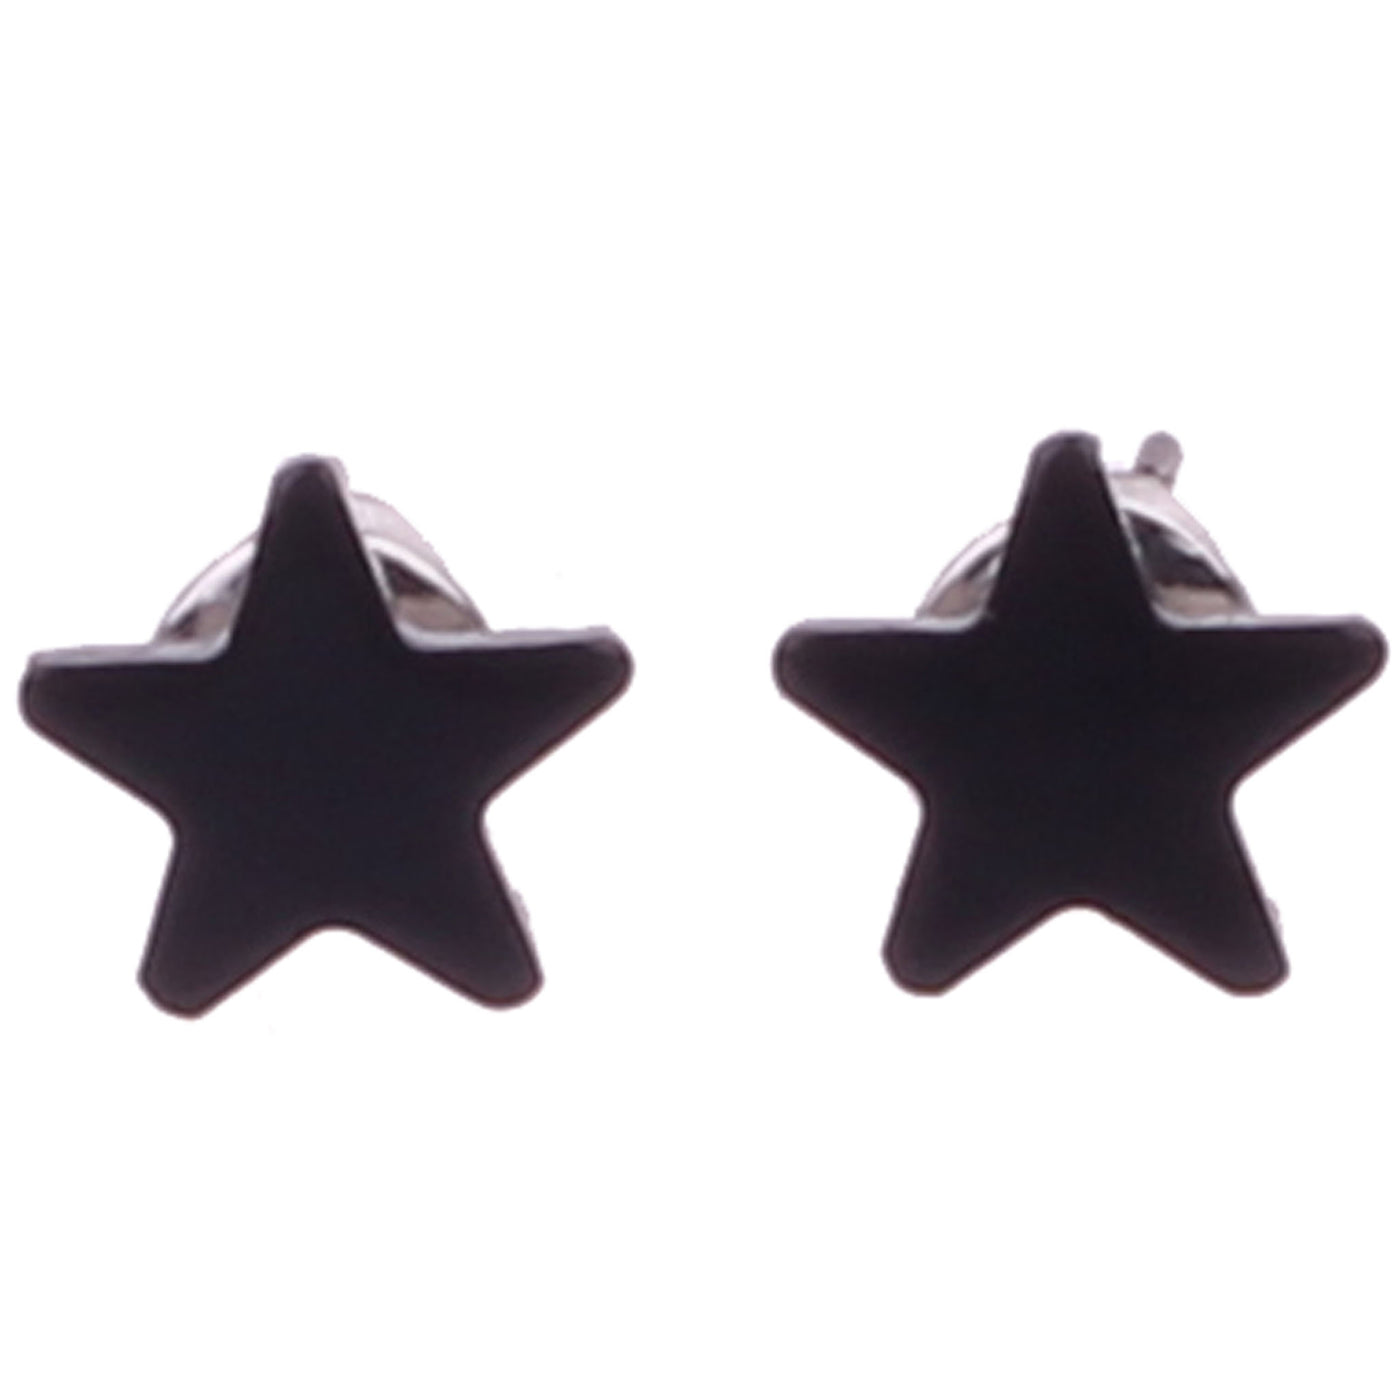 Star earrings 10mm